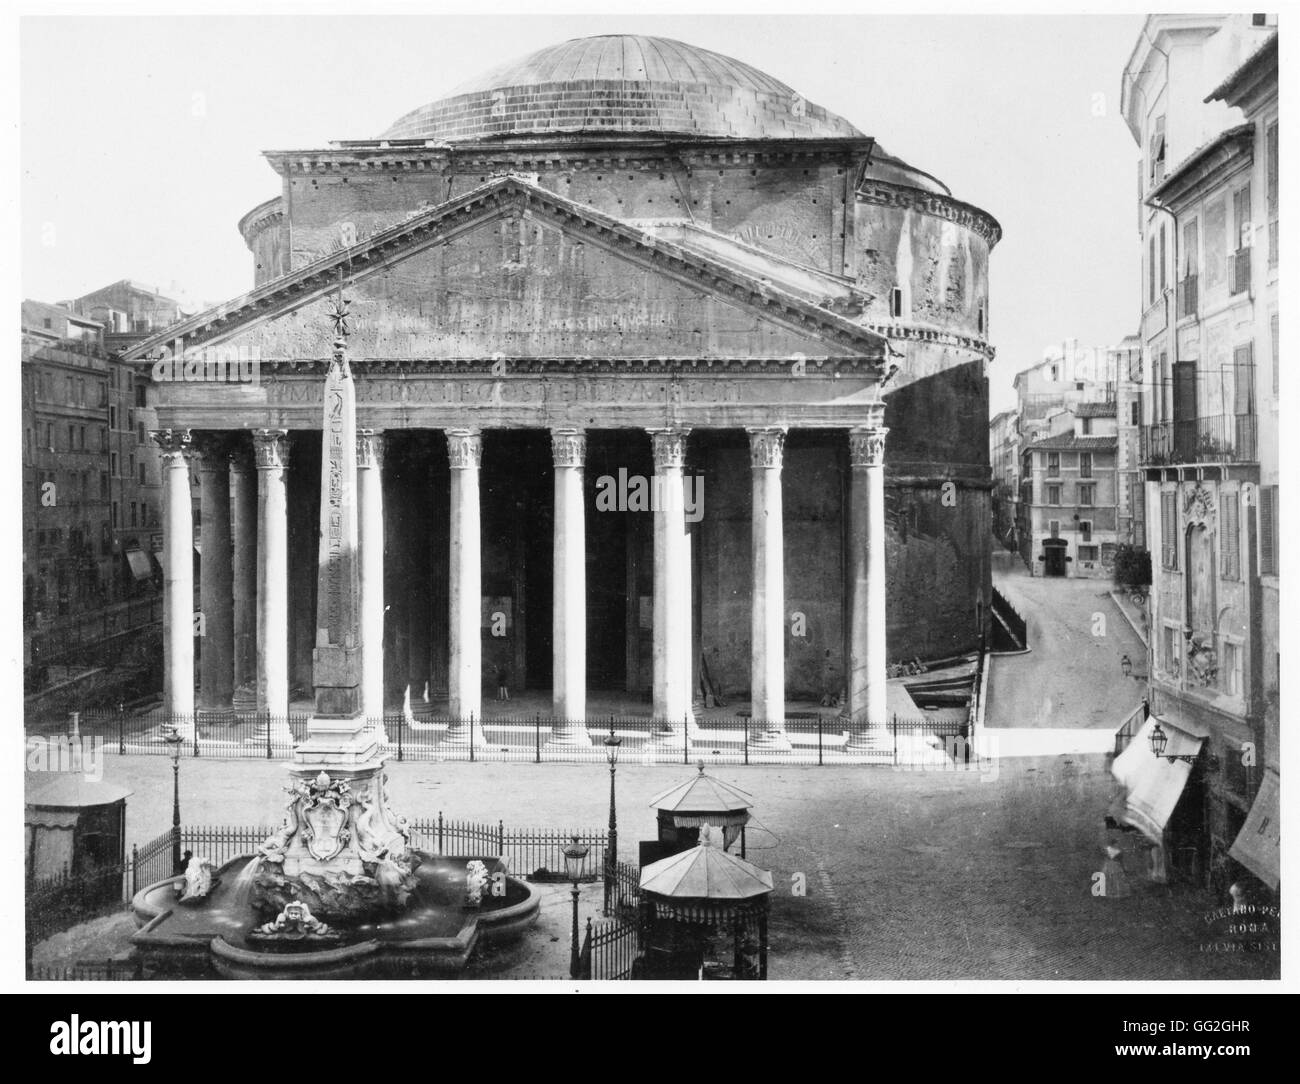 Vue sur la Piazza della Rotonda à Rome : le Panthéon et l'obélisque. Photographie prise en 1889 Banque D'Images